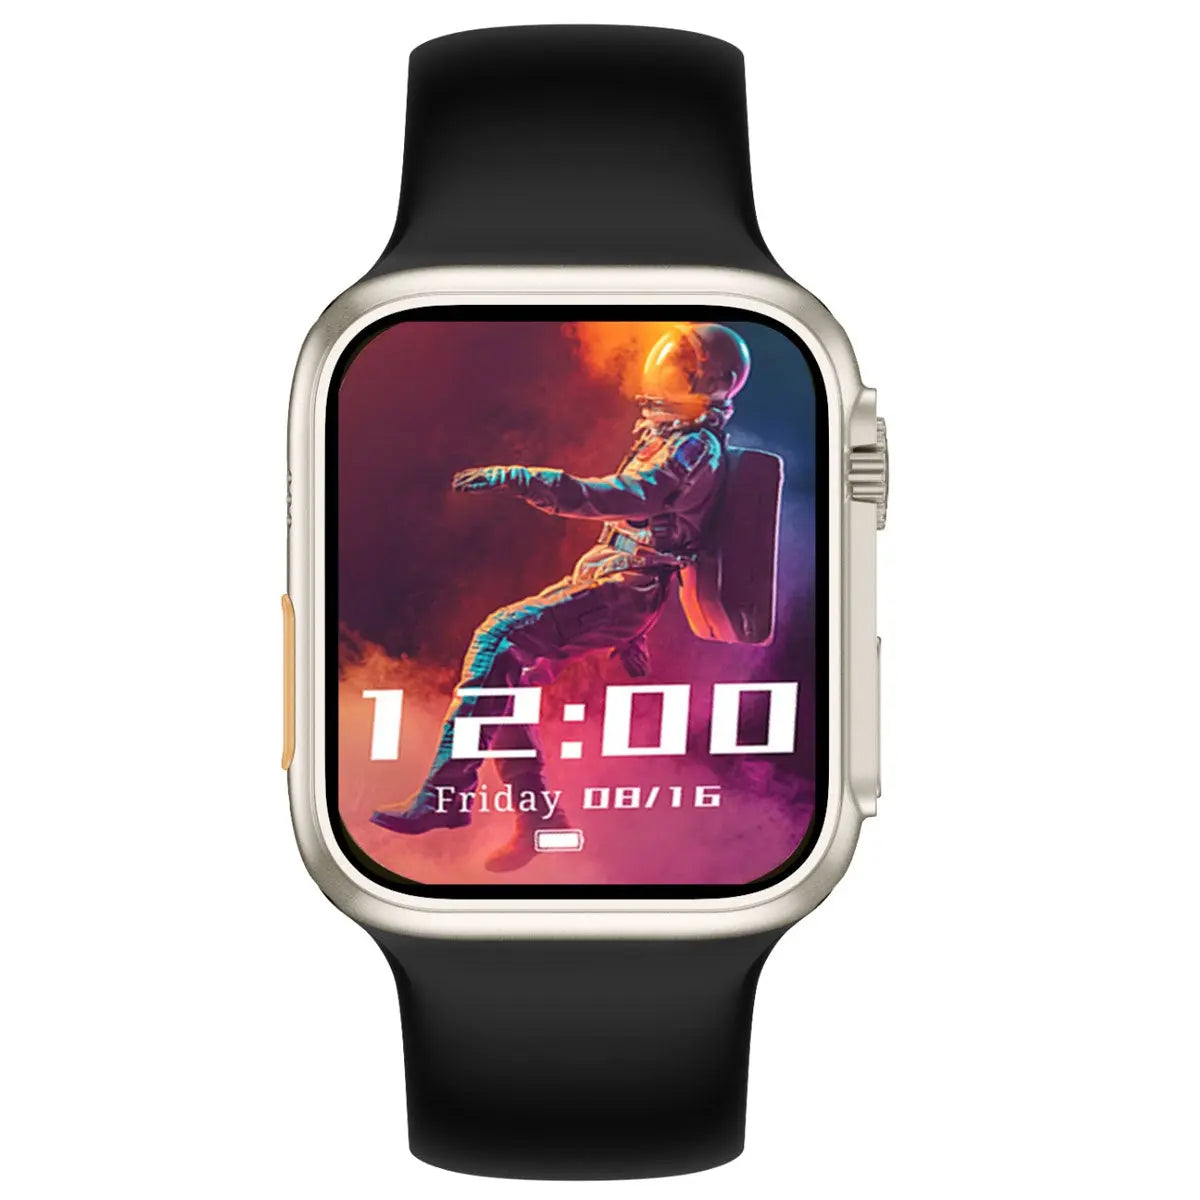 Reloj Smartwatch Dw88 4g Wifi Android 8.1 2gb Ram 16gb Rom